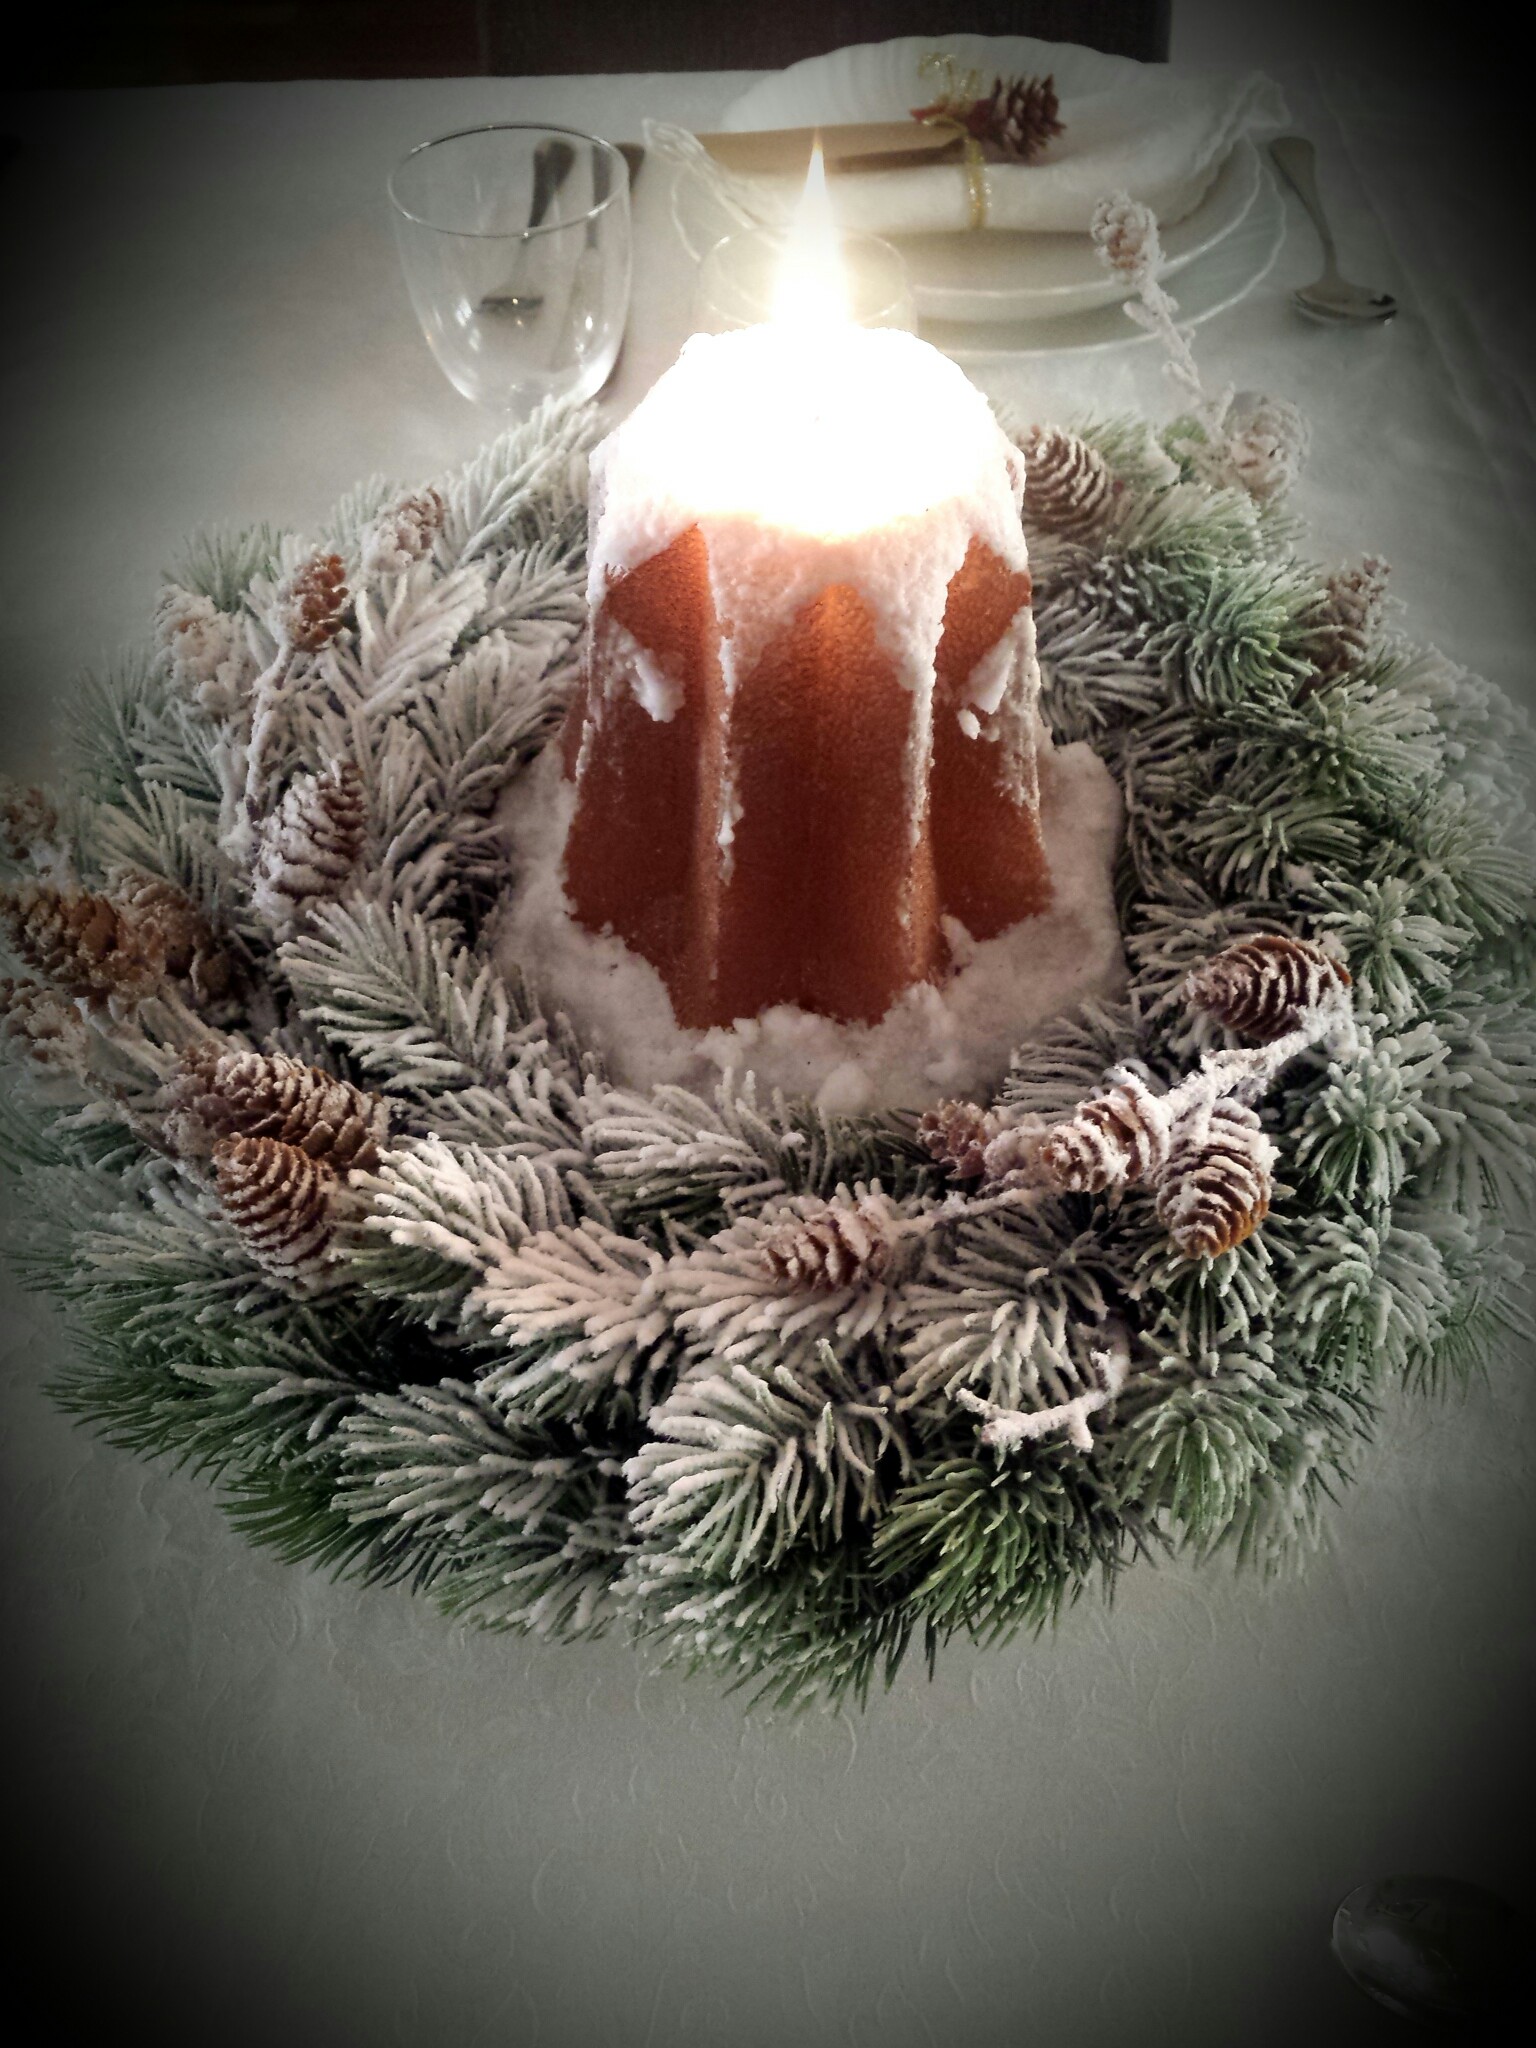 Buon Natale Con Il Cuore.Buon Natale Merry Christmas Ricette Green In Cucina Amore E Passione Per La Cucina Sana